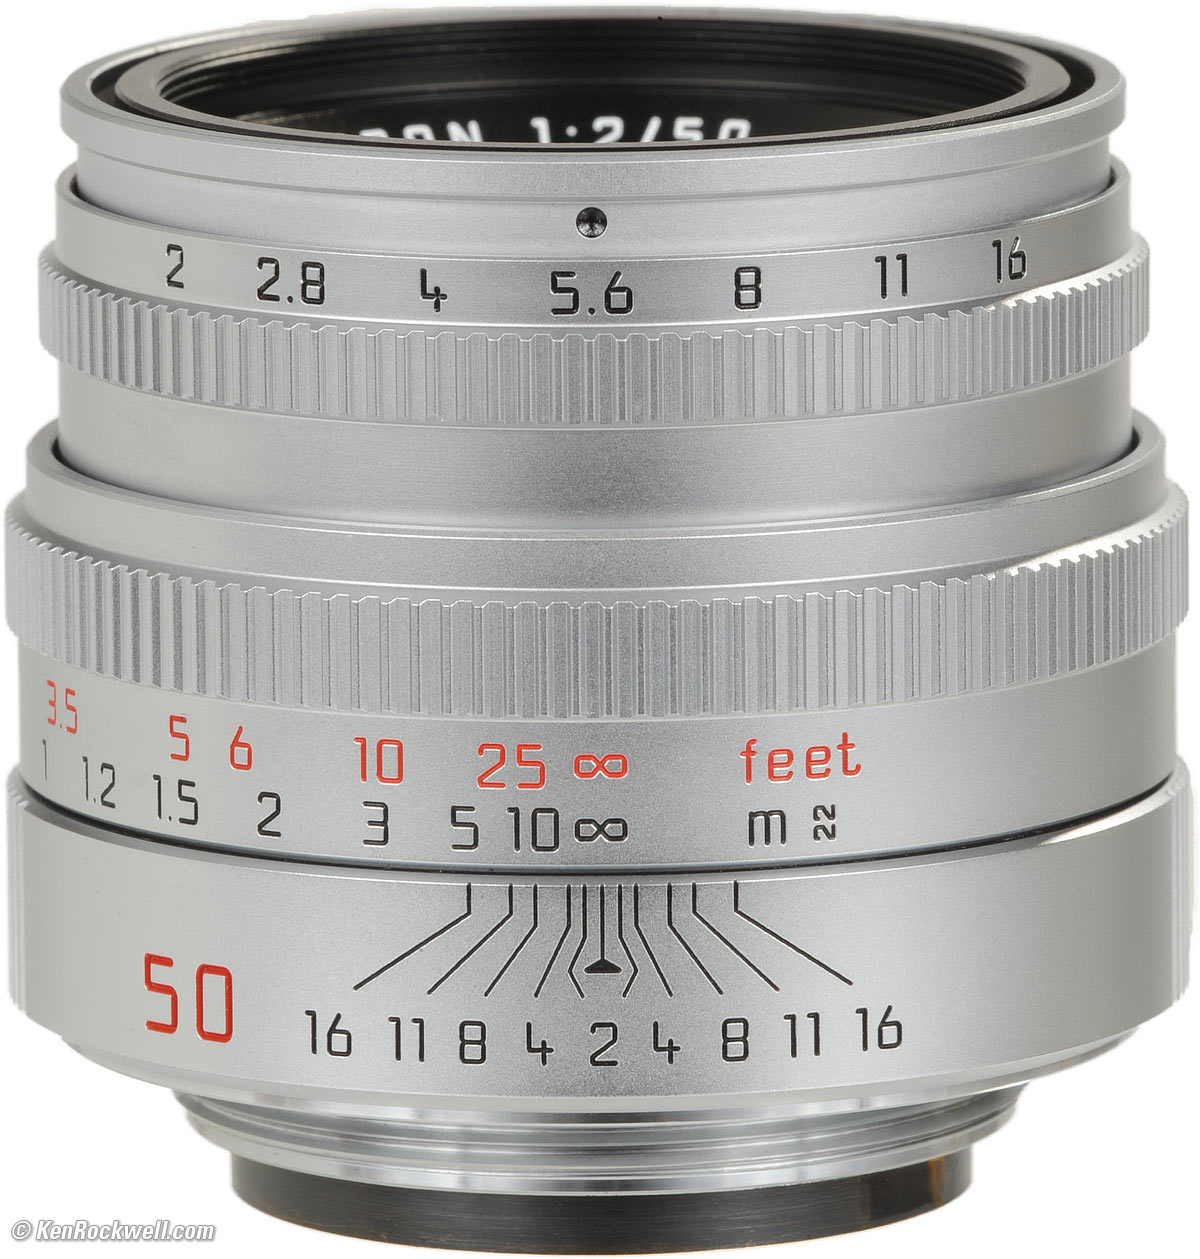 てなグッズや Leica 50mm f 2.0 Summicron-M シルバークローム マニュアルフォーカスレンズ 11816